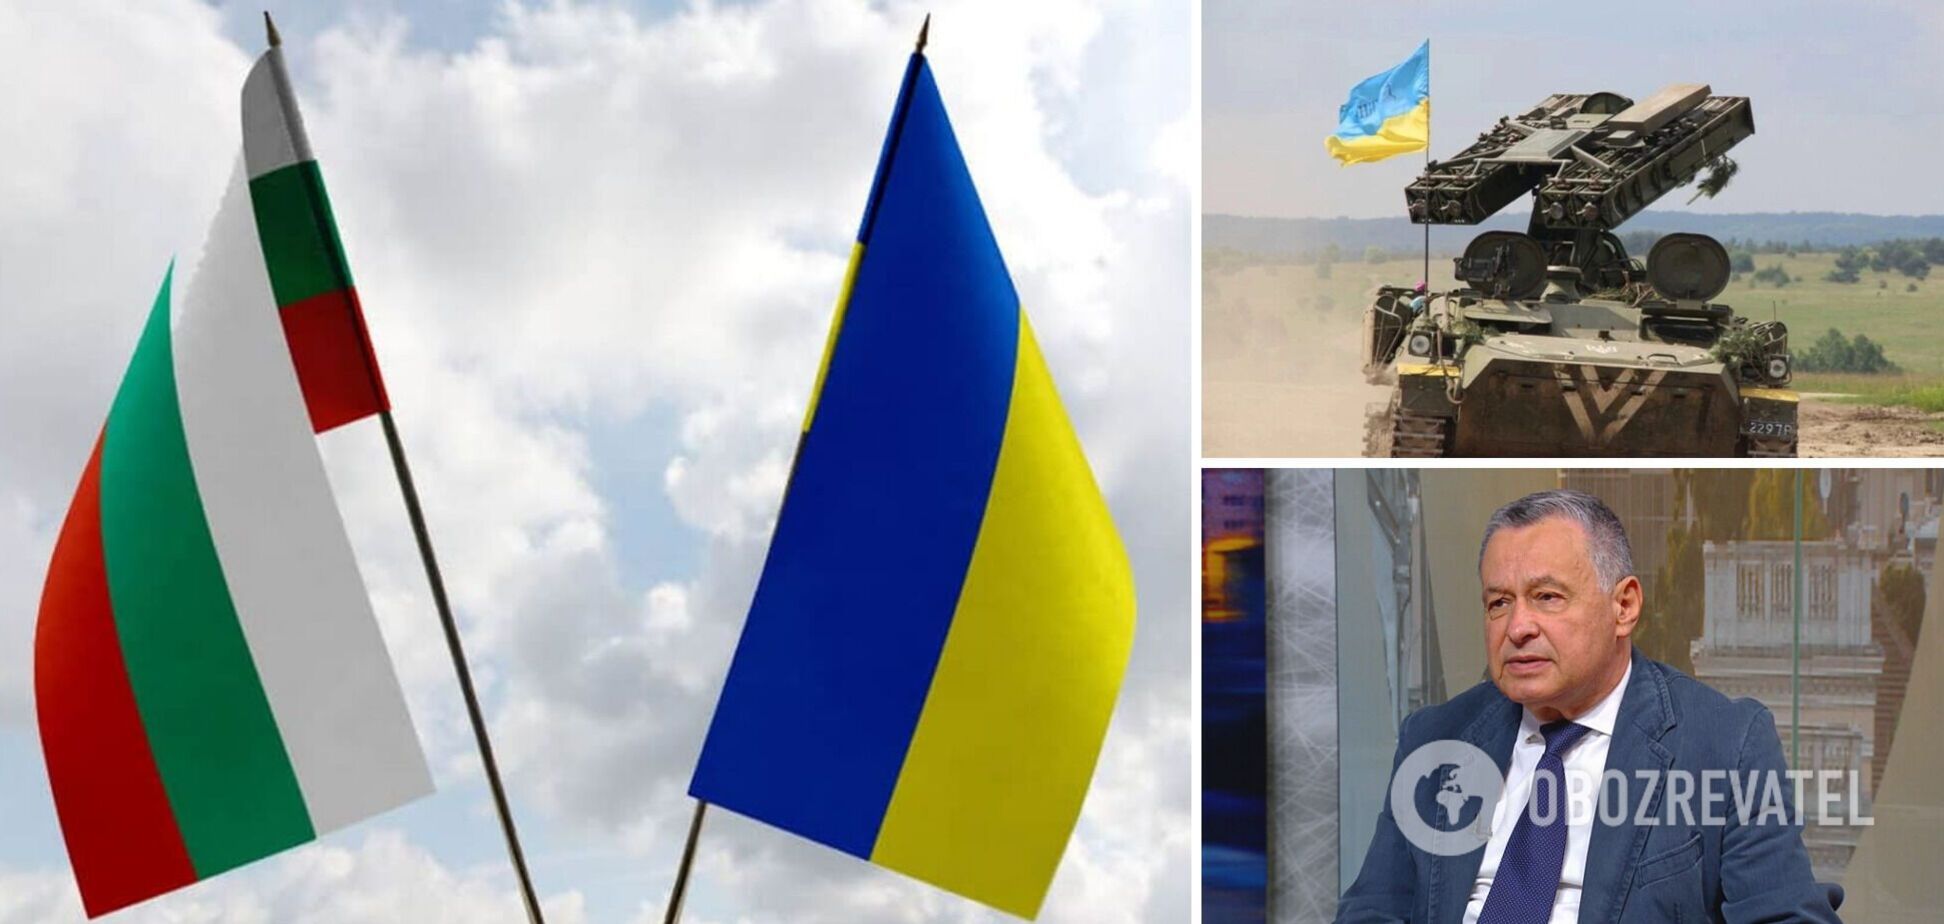 Украина направила Болгарии запрос о предоставлении 30 видов вооружения, включая средства ПВО